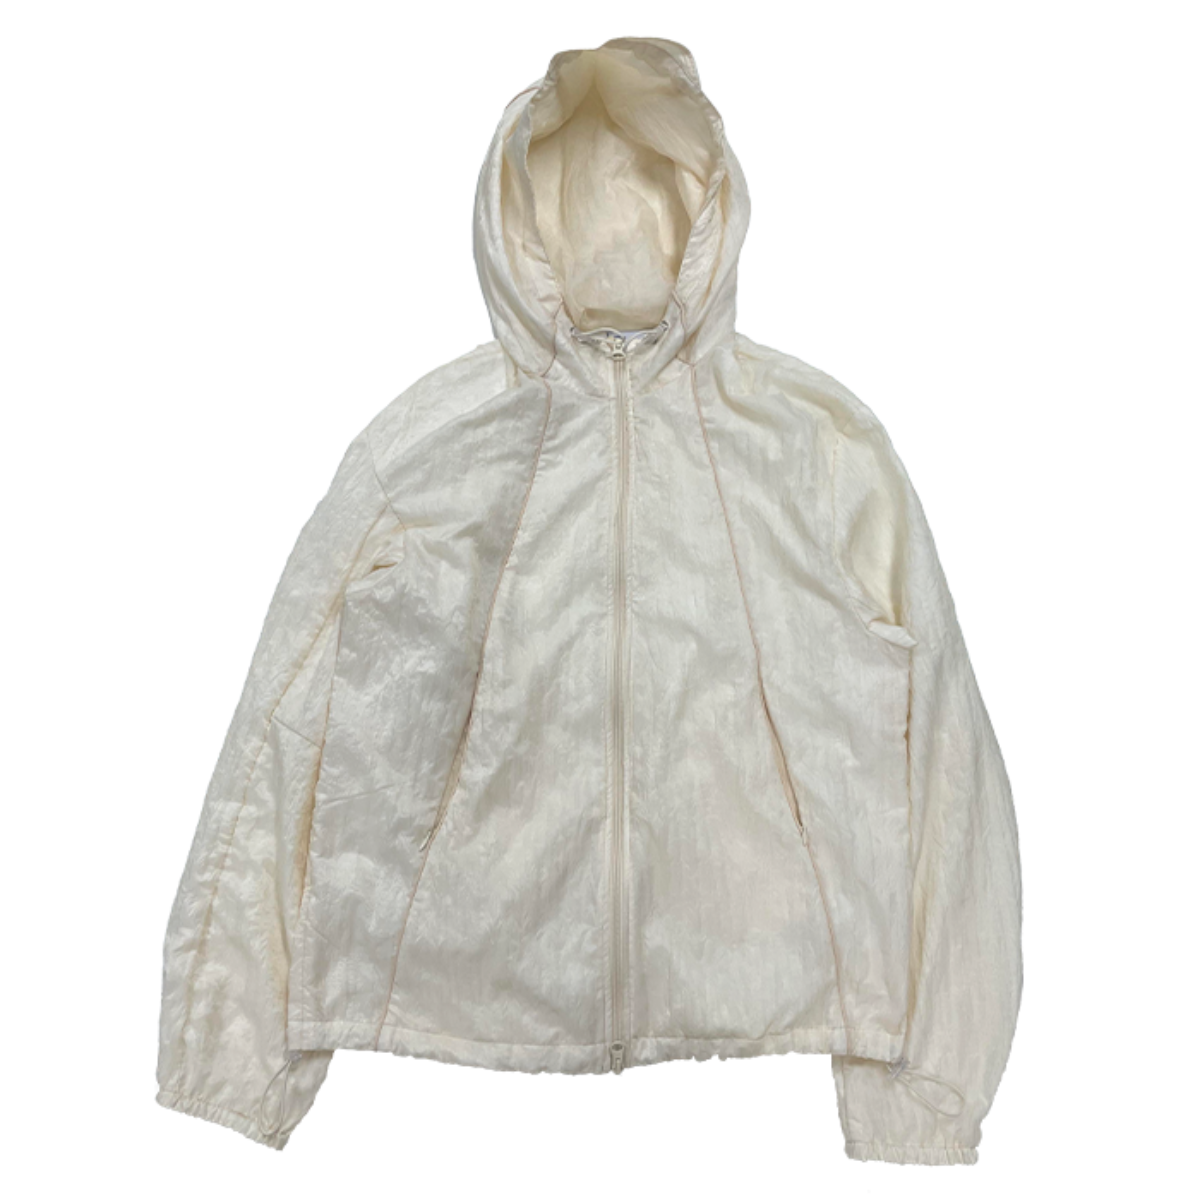 TCM double fabric windstopper jacket (cream)